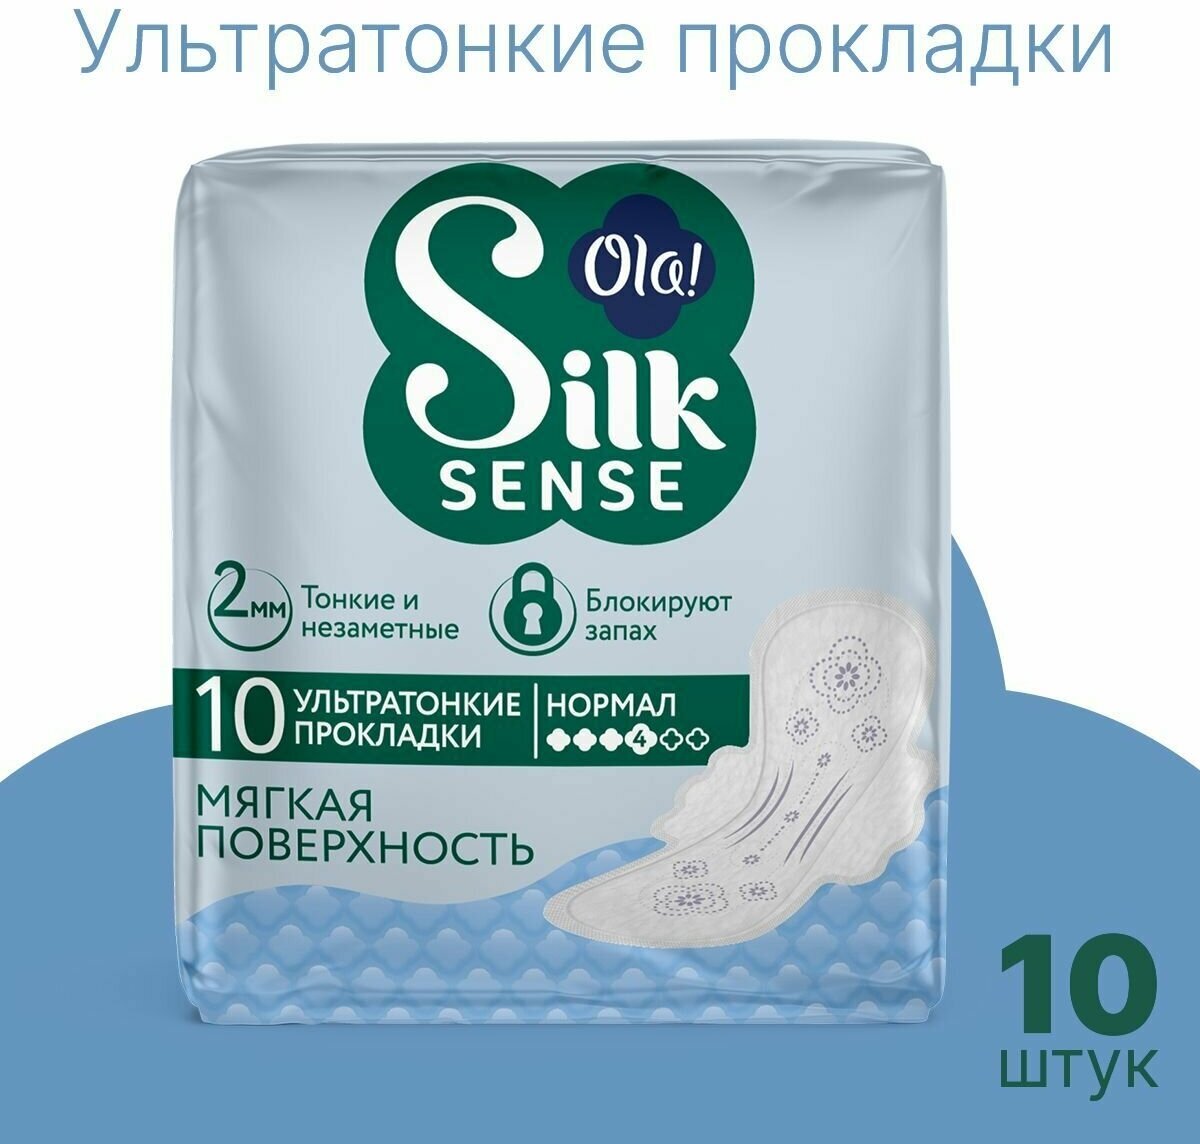 Прокладки женские с крылышками Ola! Silk Sense Ultra Нормал, мягкая поверхность, без аромата, 10шт.